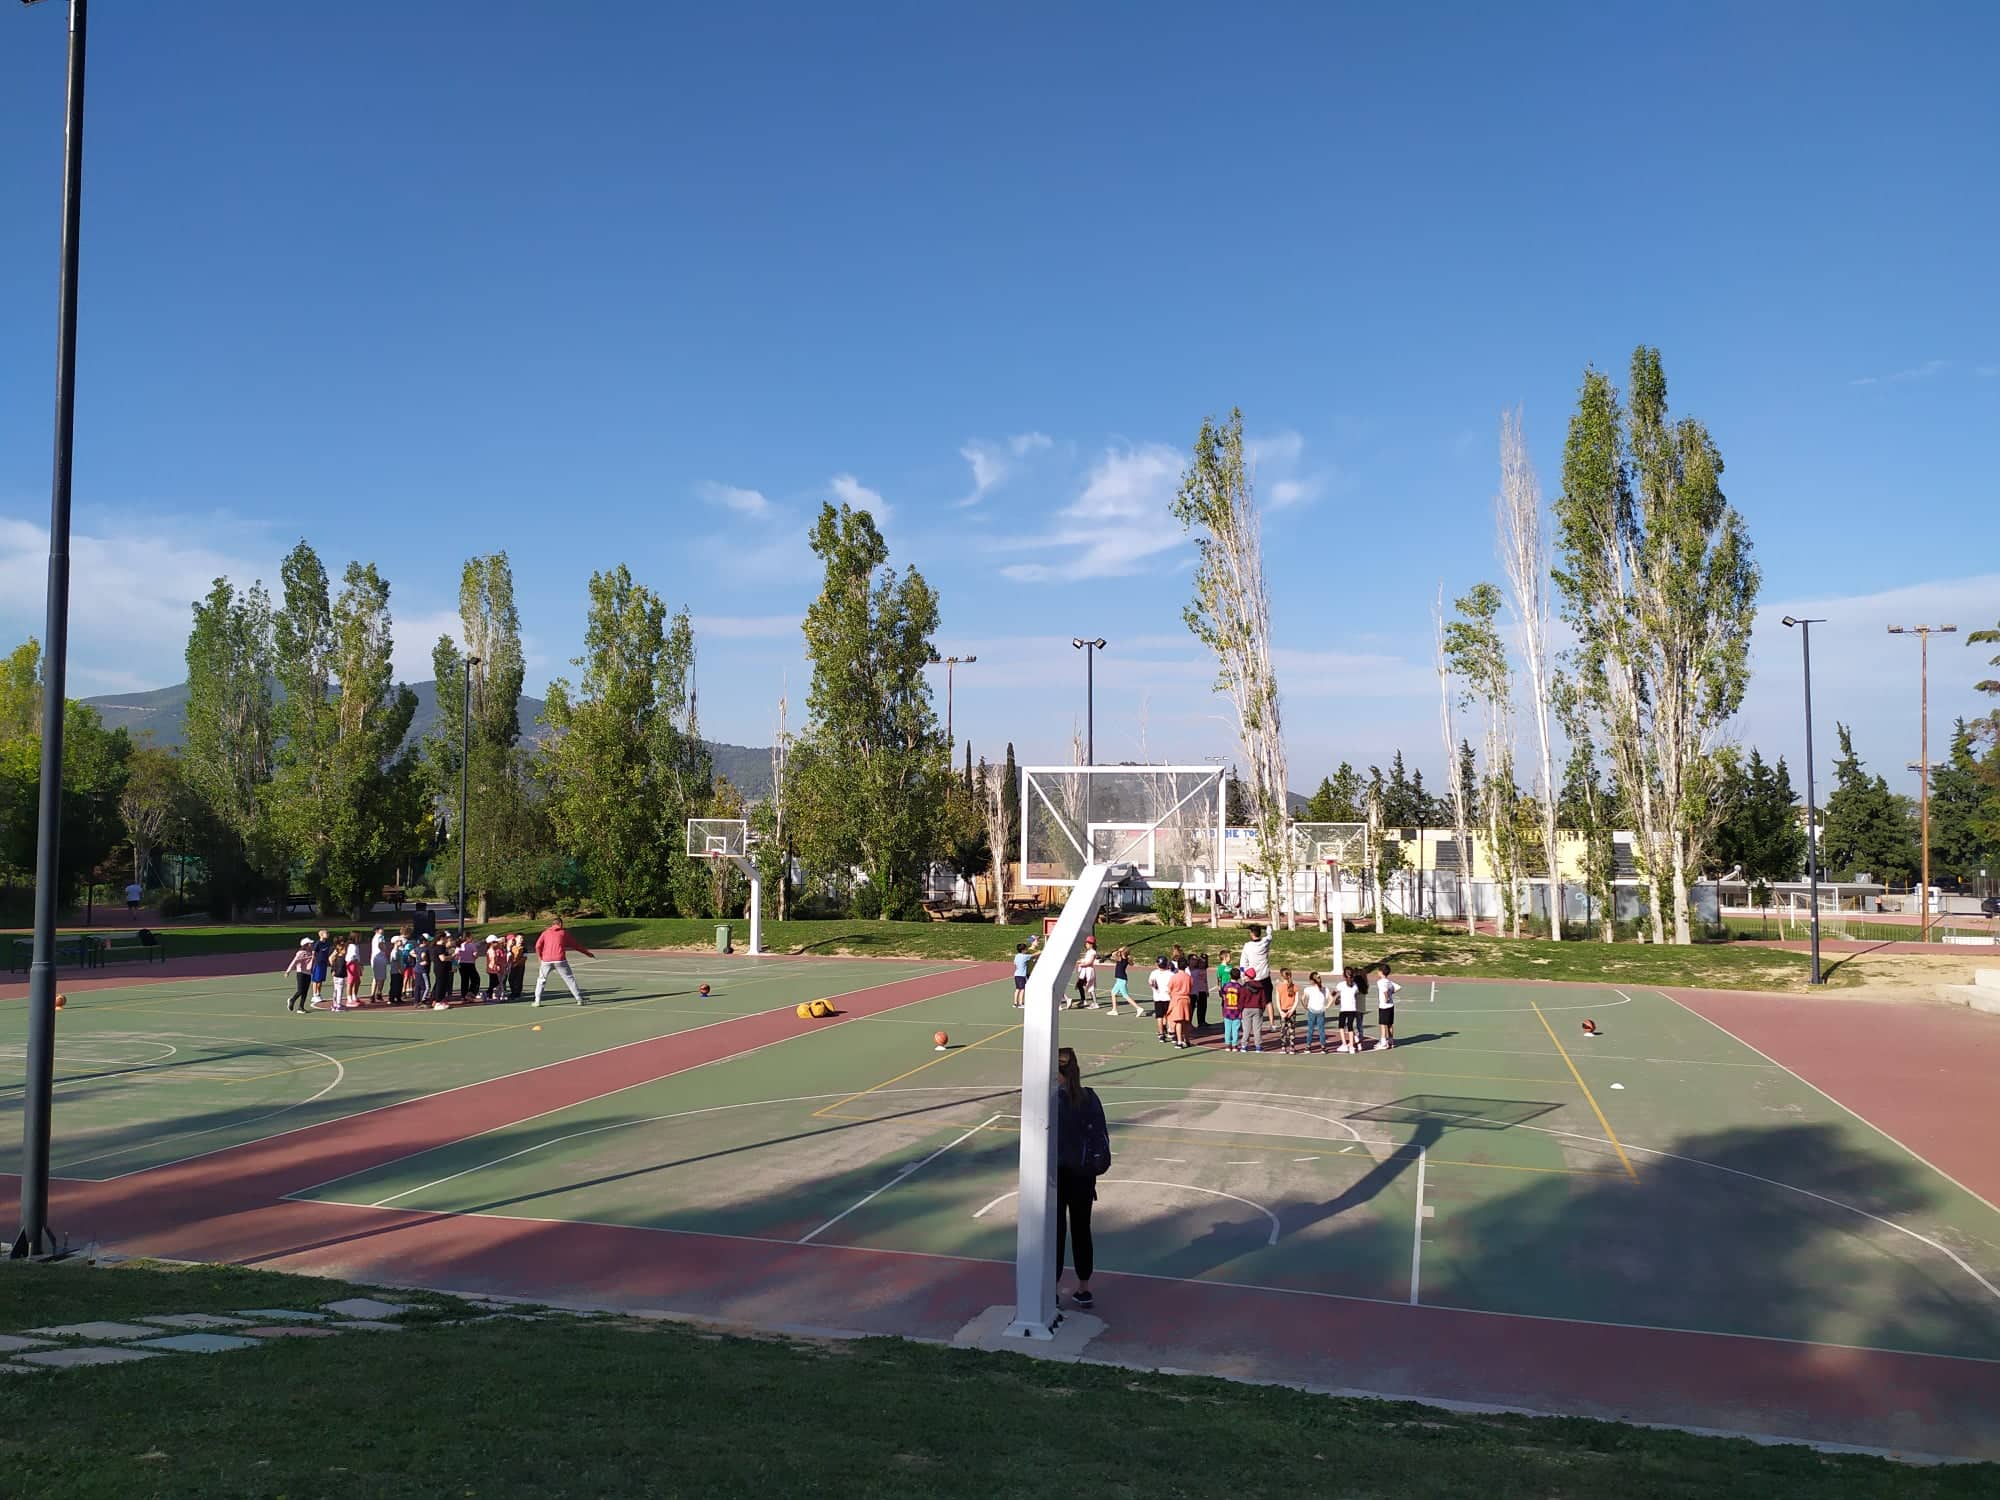 Φωτογραφία του γηπέδου μπάσκετ, όπου τα παιδιά έχουν χωριστεί σε δύο ομάδες.